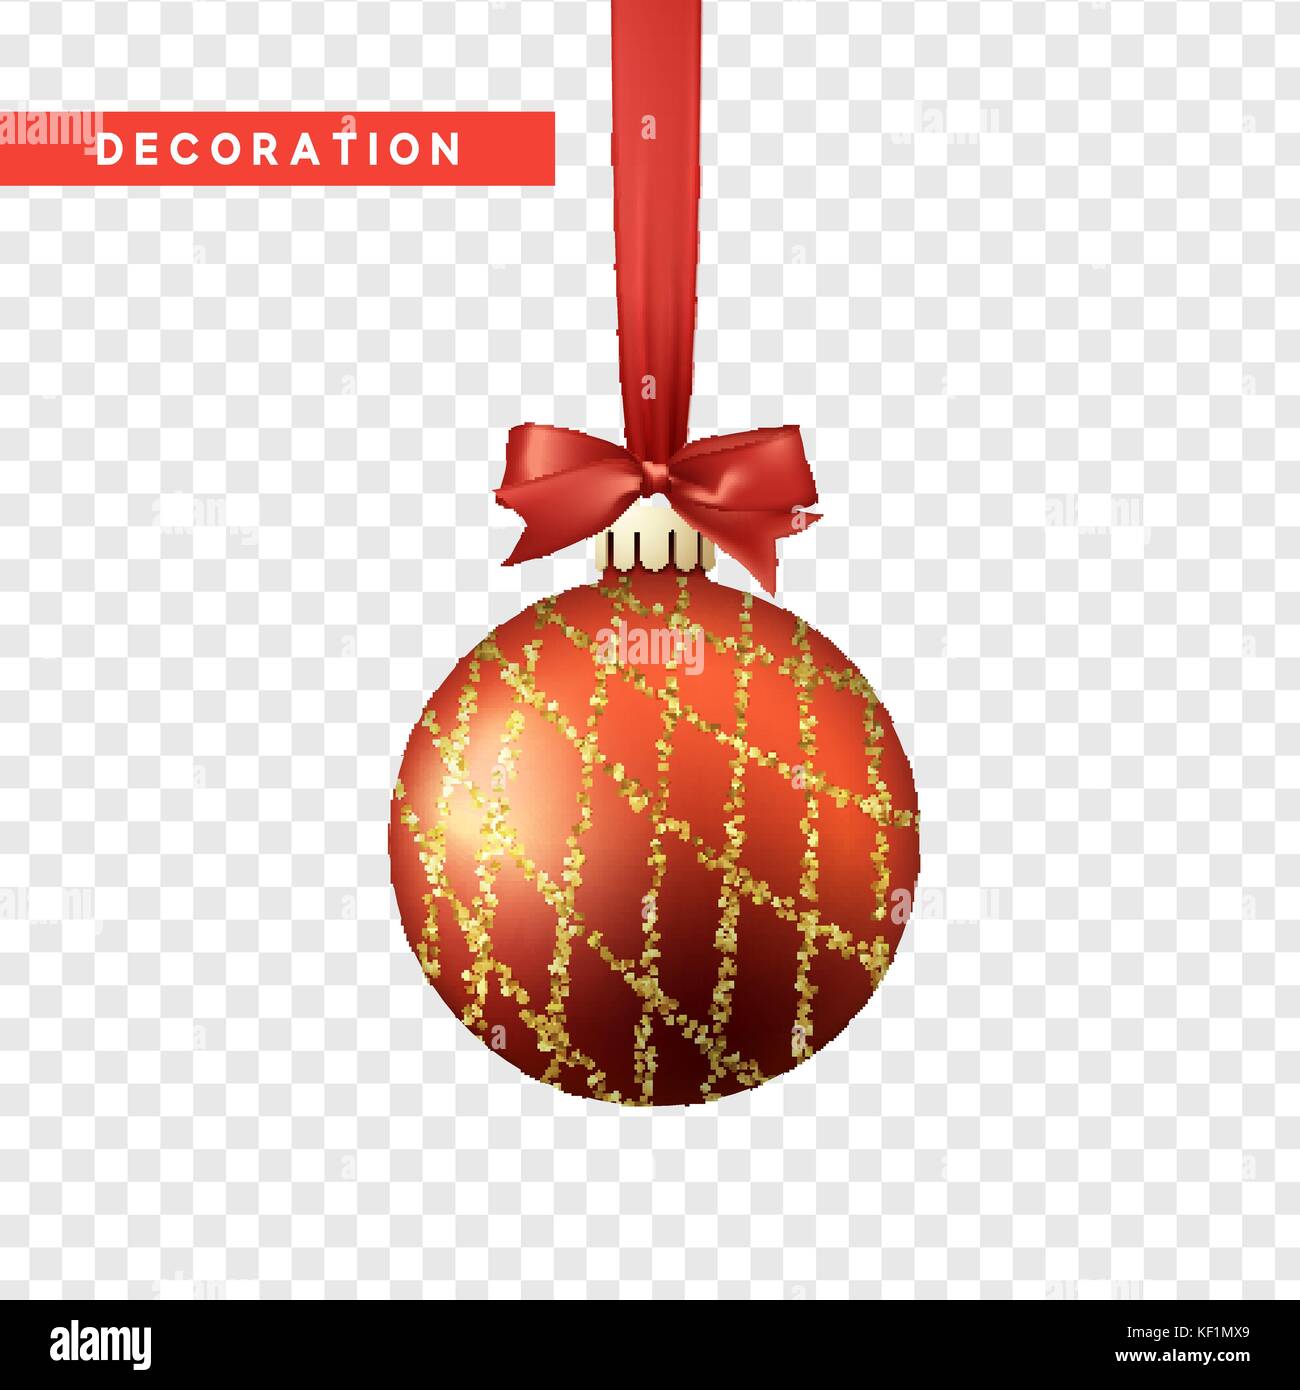 Weihnachten Kugeln in Rot und Gold Farbe. Christbaumkugel Weihnachten Dekoration Elemente. Stock Vektor